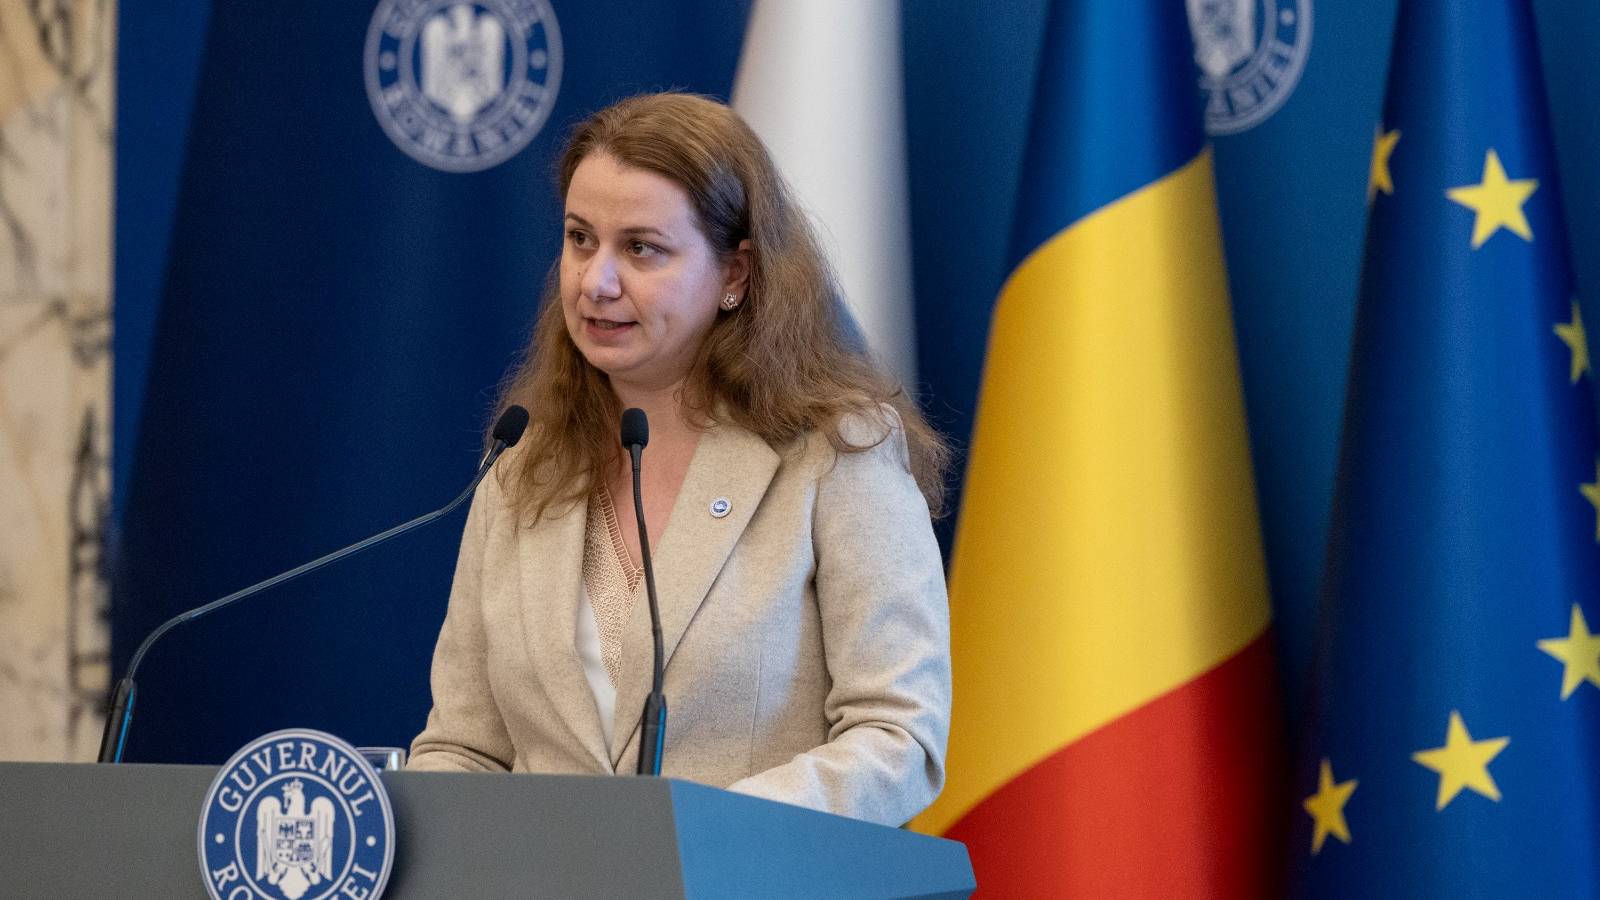 Offizielle Ankündigung des Bildungsministers Bildungsmaßnahmen LETZTER MOMENT Rumänien